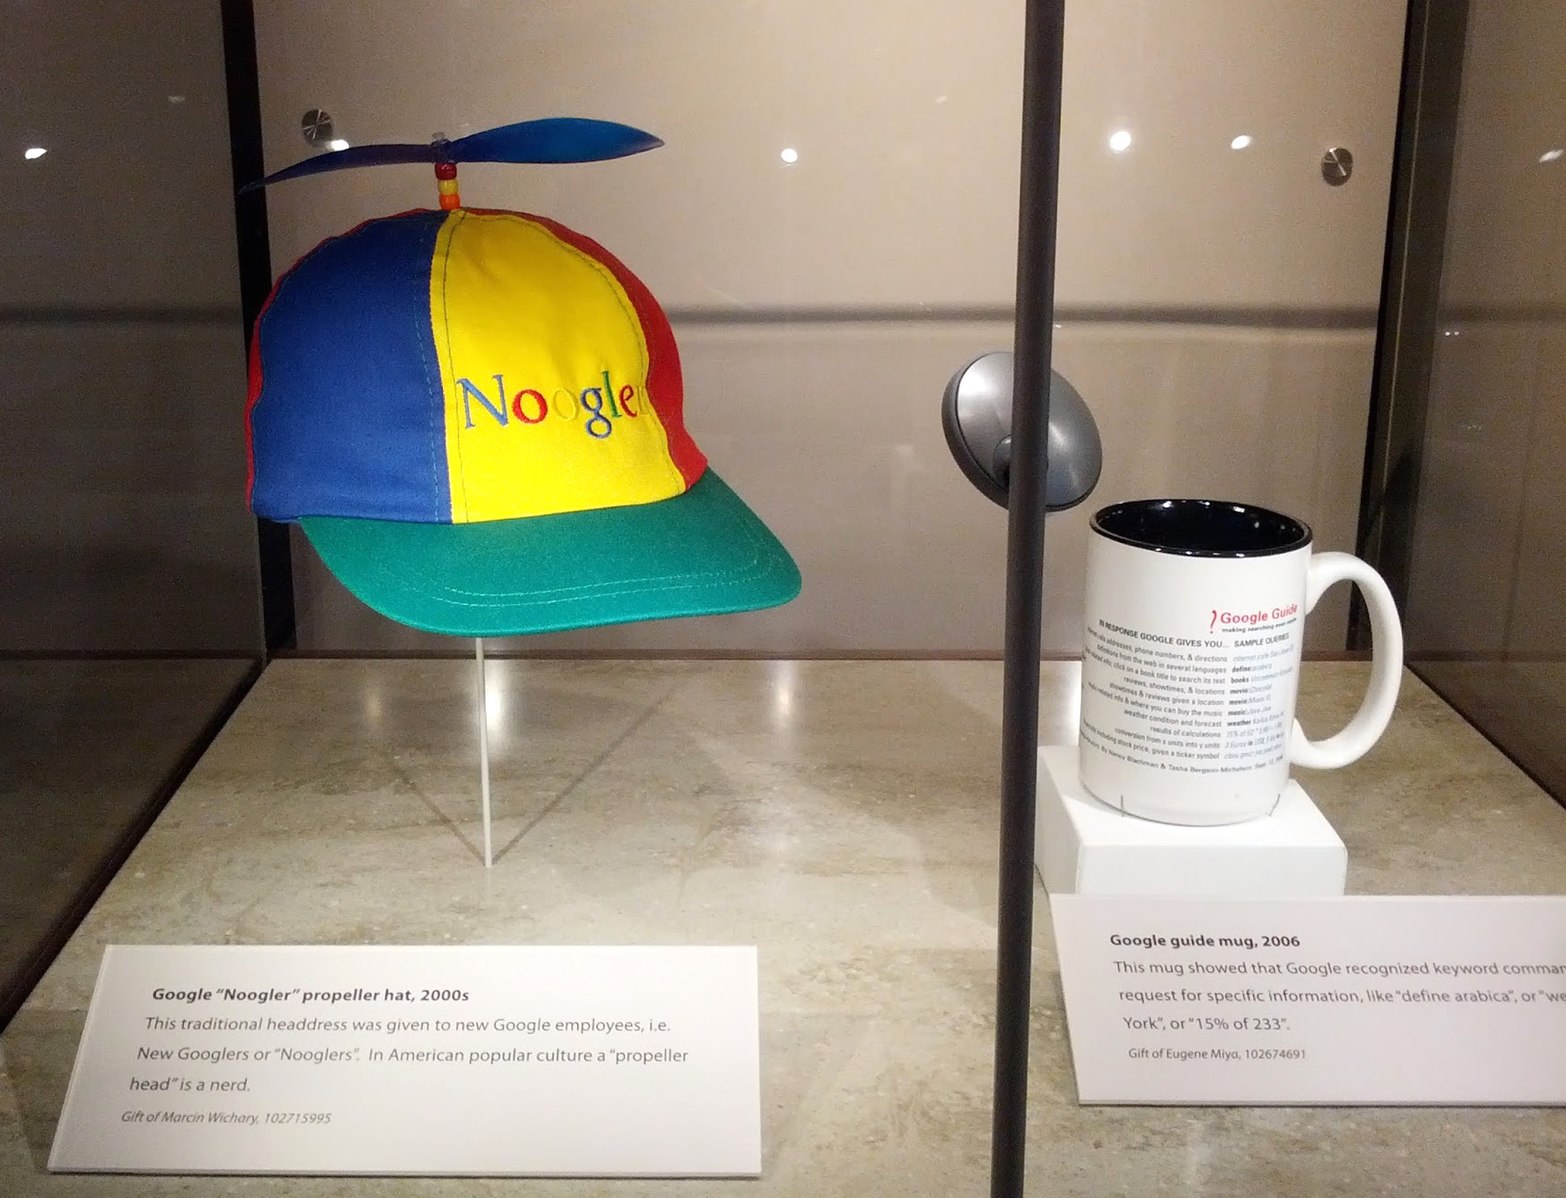 Noogler employee hat in museum